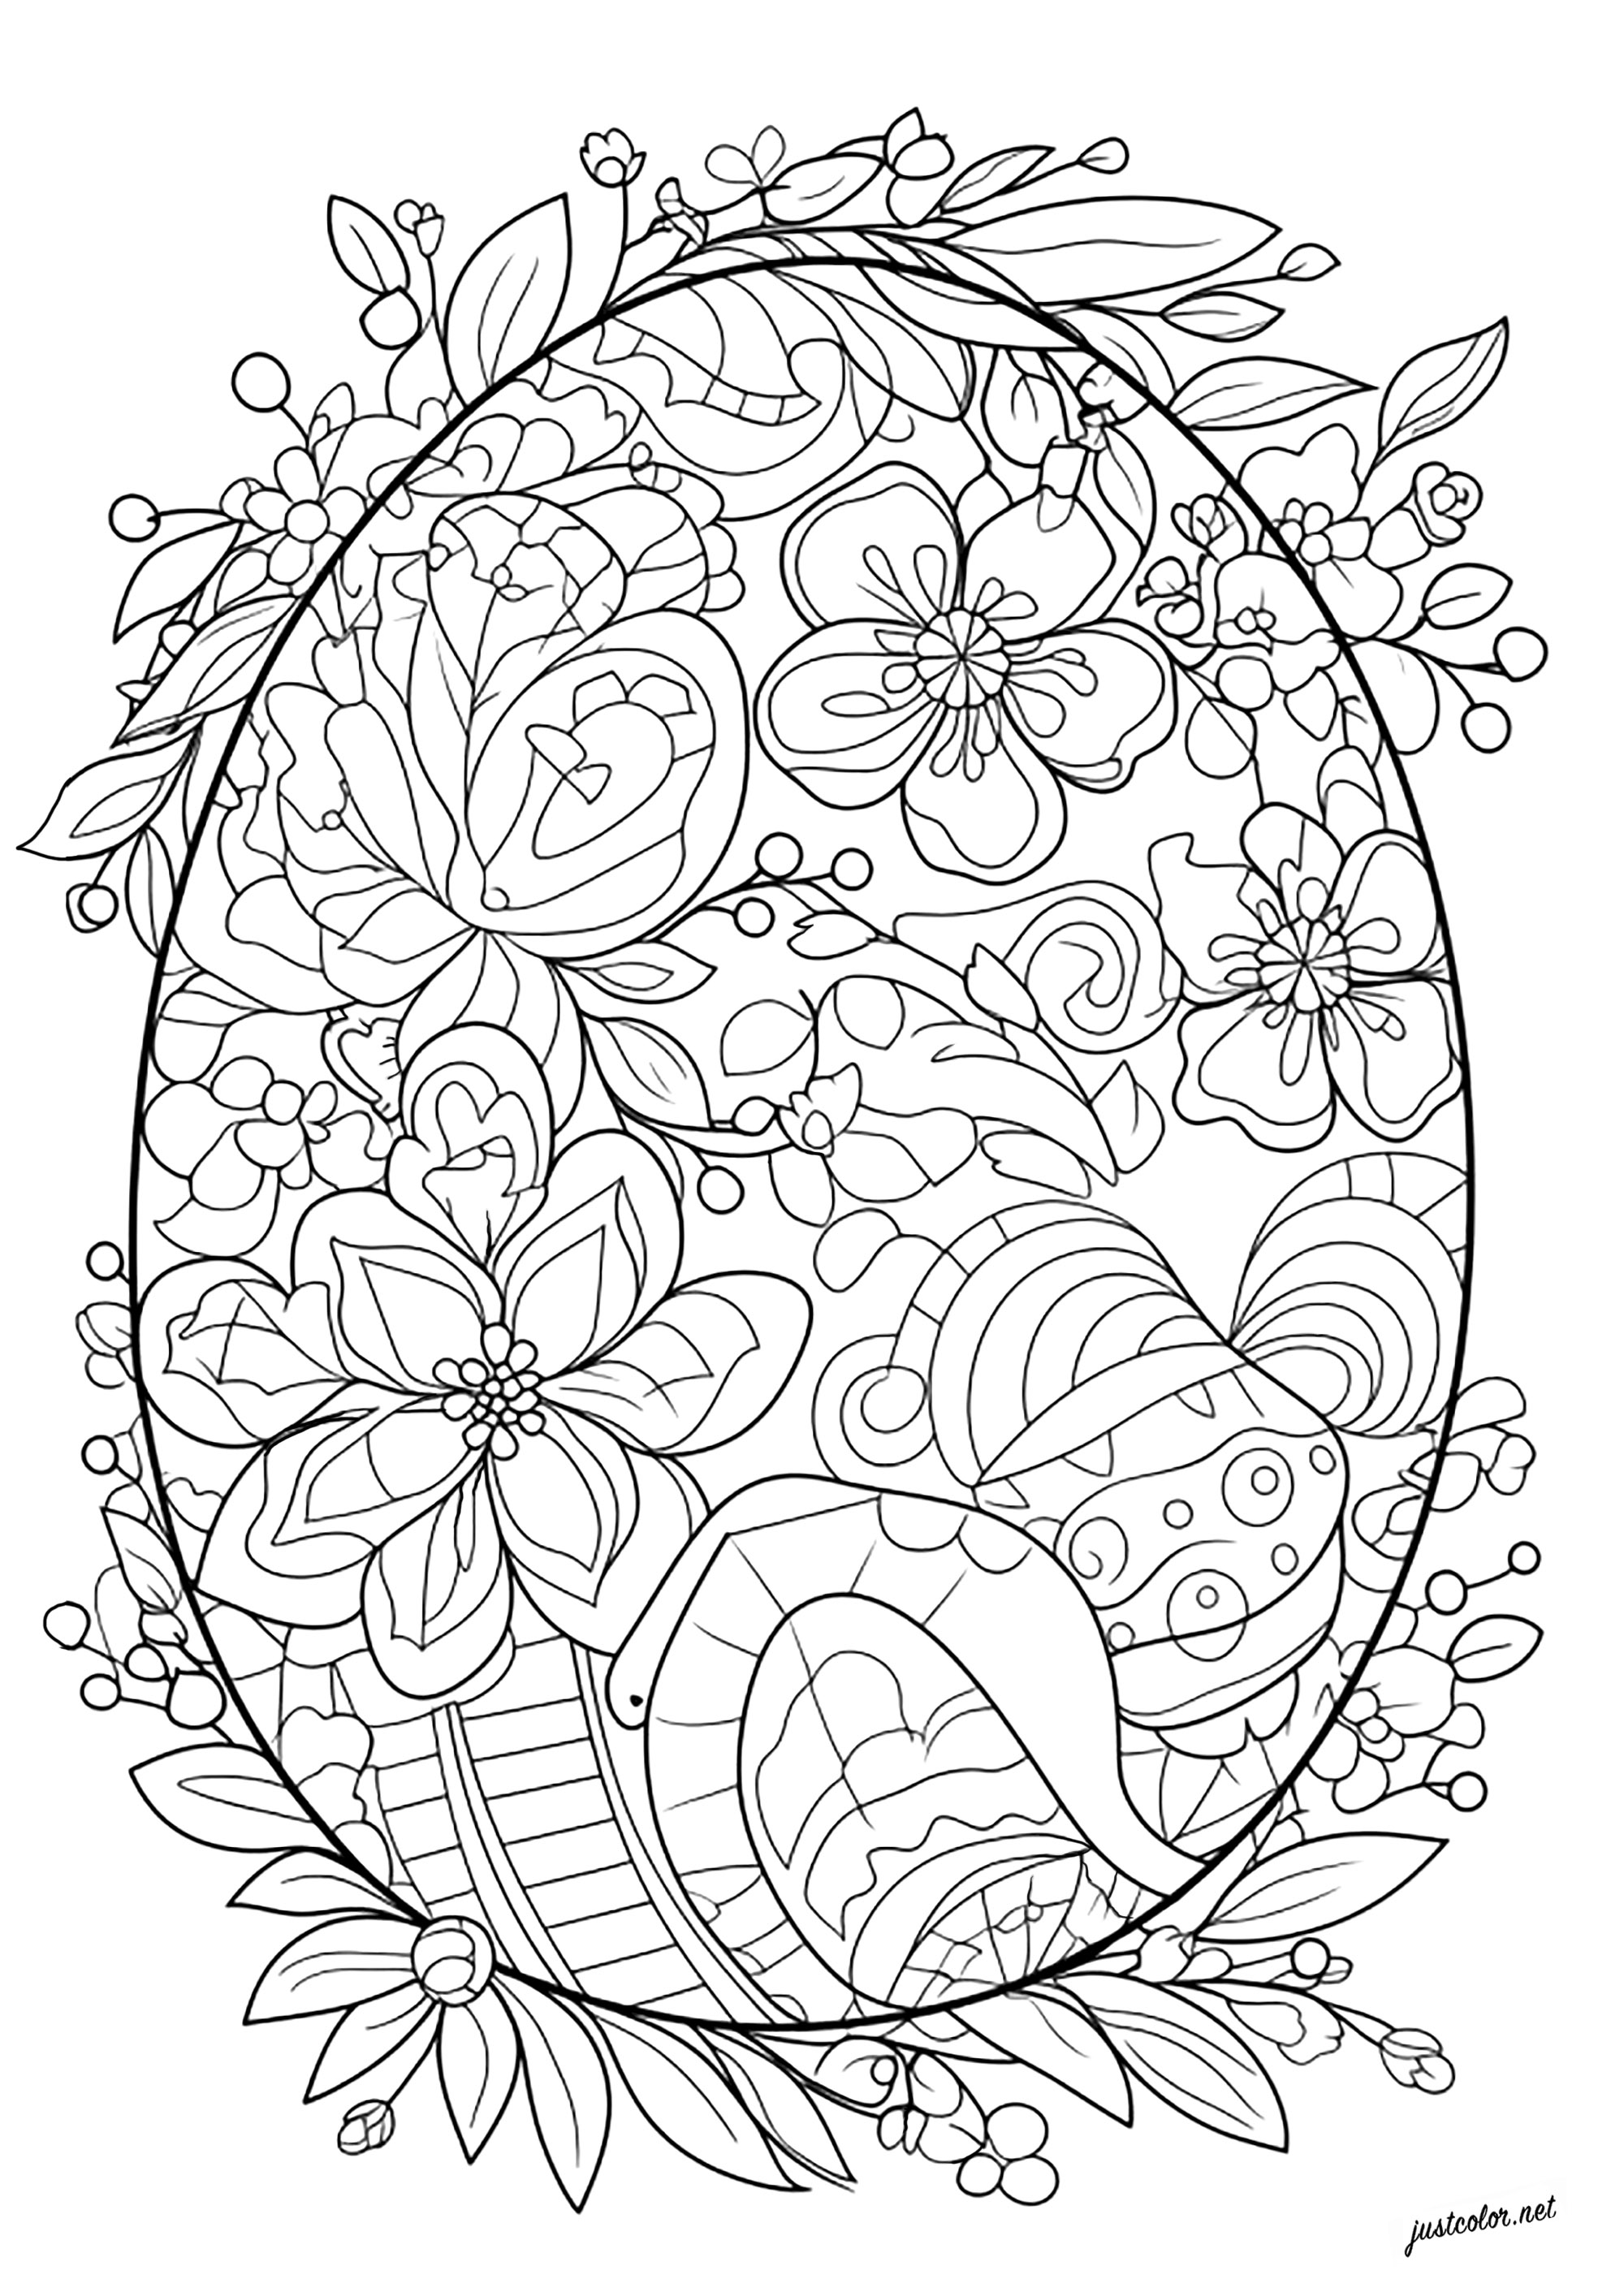 Huevo de Pascua único para colorear. Muchas flores y hojas para colorear en este precioso huevo de Pascua